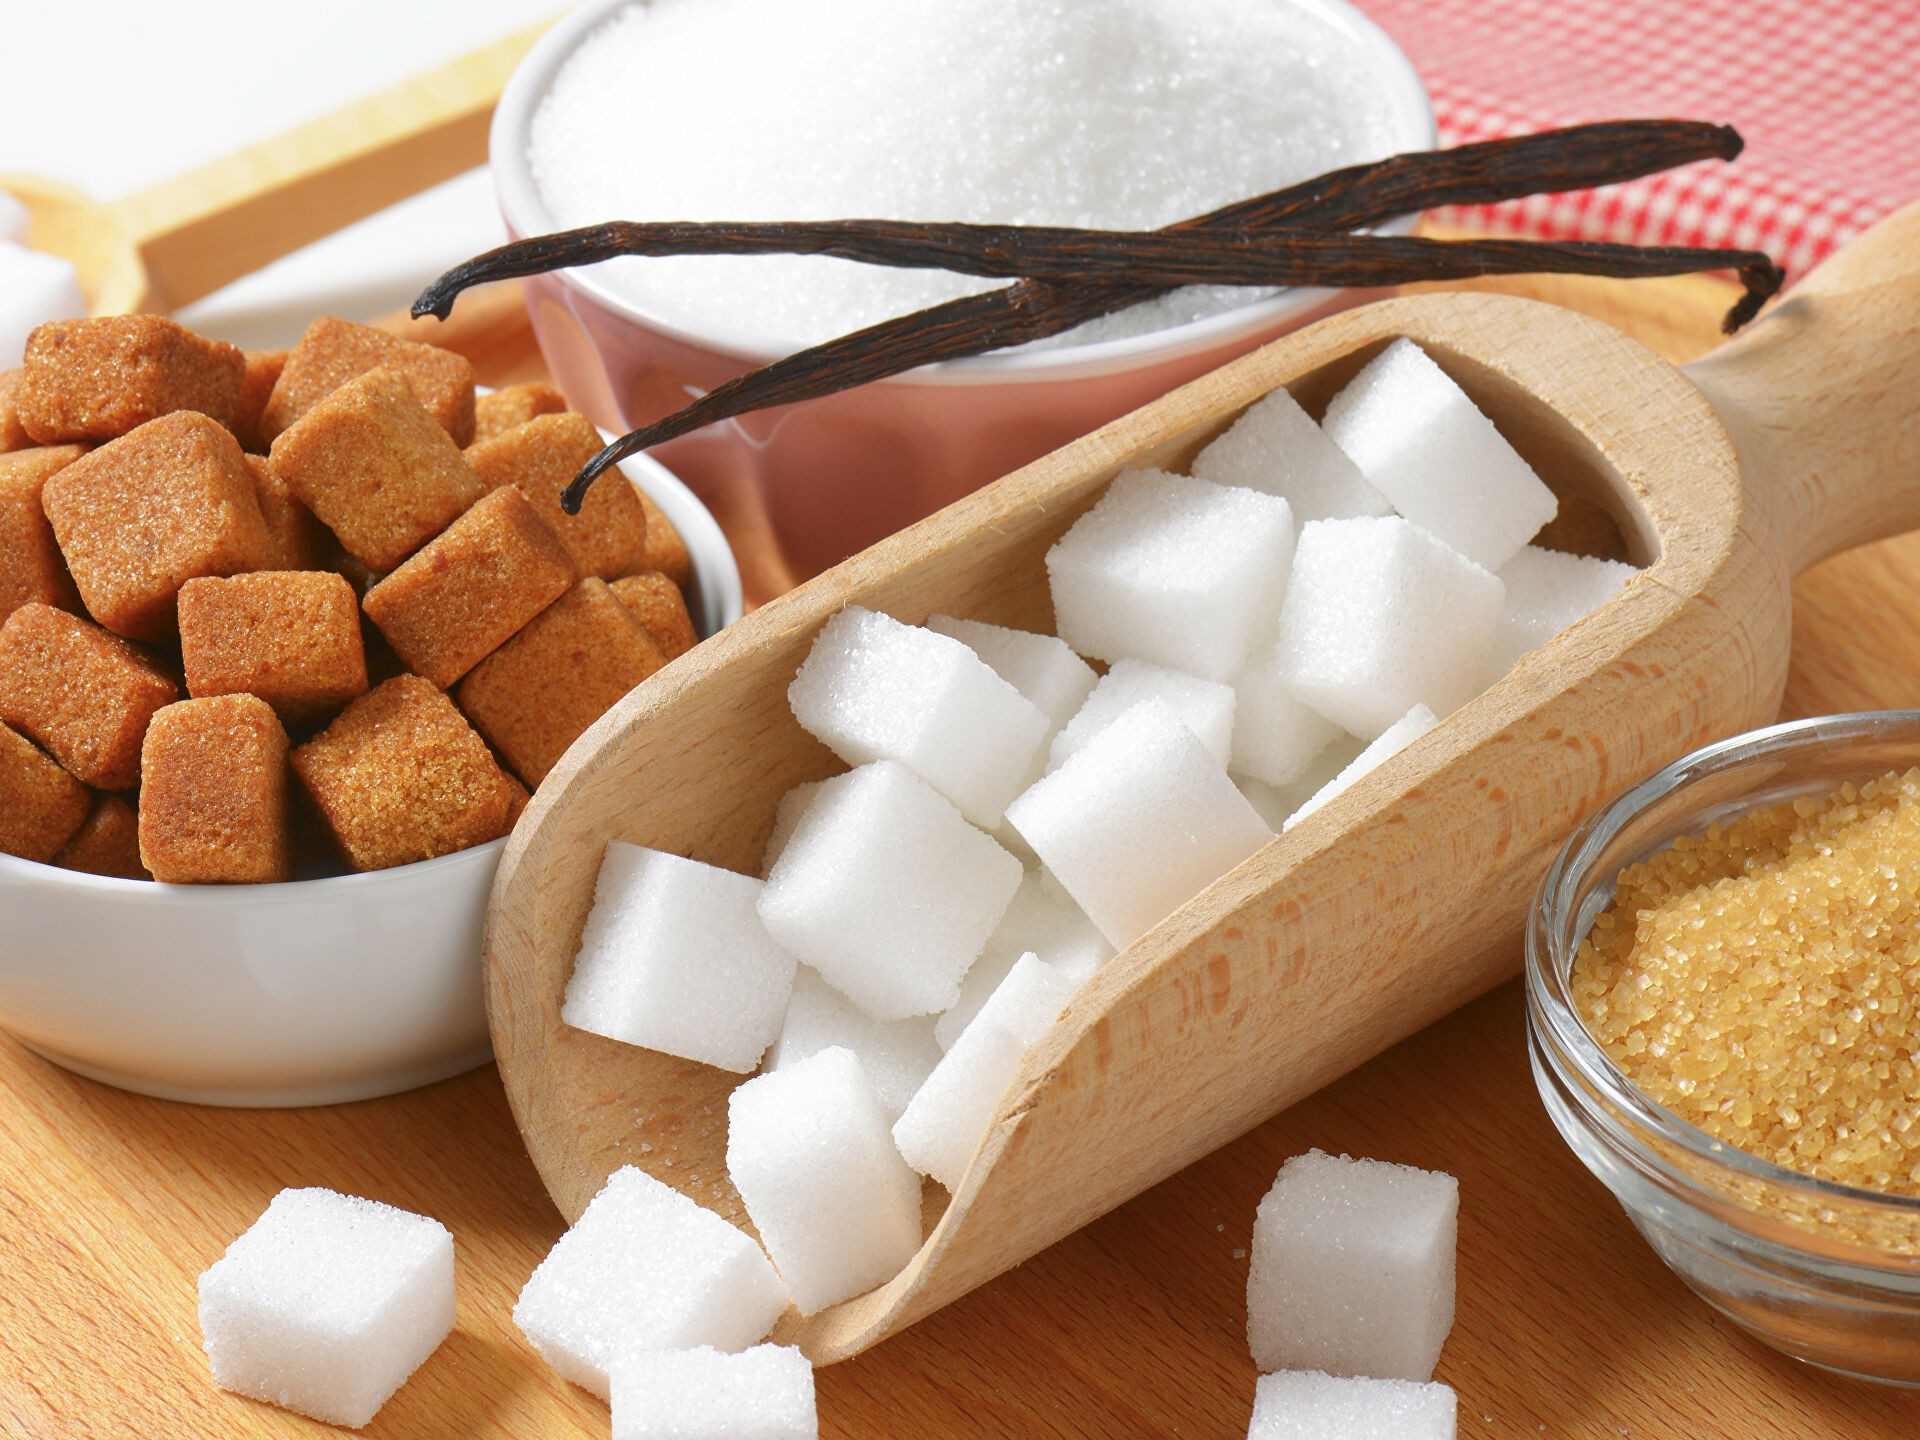 Пора запасаться сахаром: Минсельхоз предупреждает о подорожании этого стратегического продукта